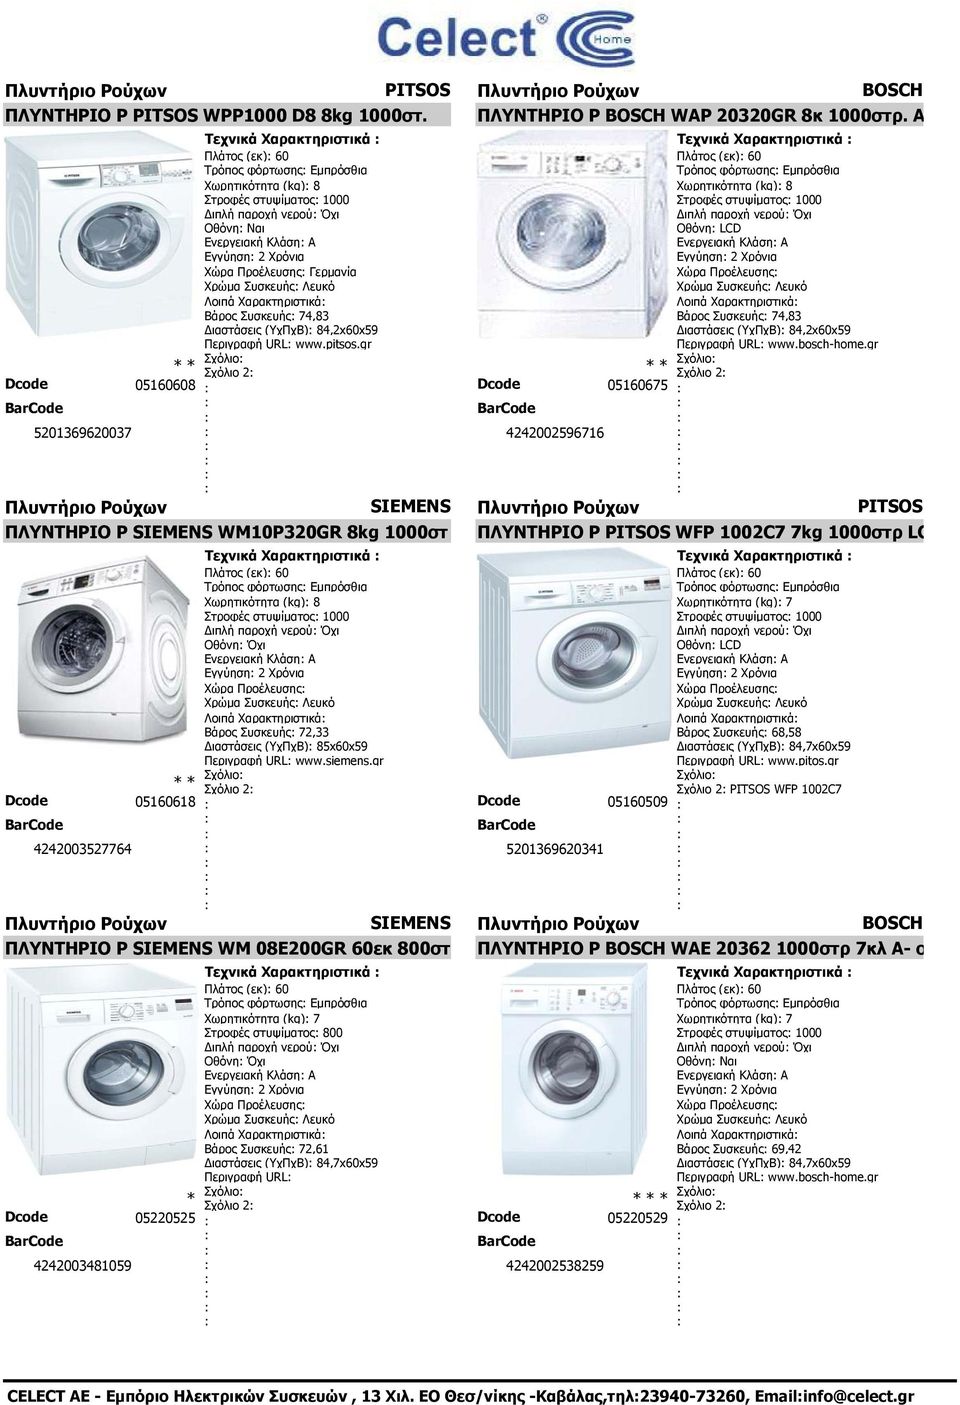 Γερμανία Χρώμα Συσκευής Λευκό Λοιπά Χαρακτηριστικά Βάρος Συσκευής 74,83 ιαστάσεις (ΥχΠχΒ) 84,2x60x59 Περιγραφή URL www.pitsos.